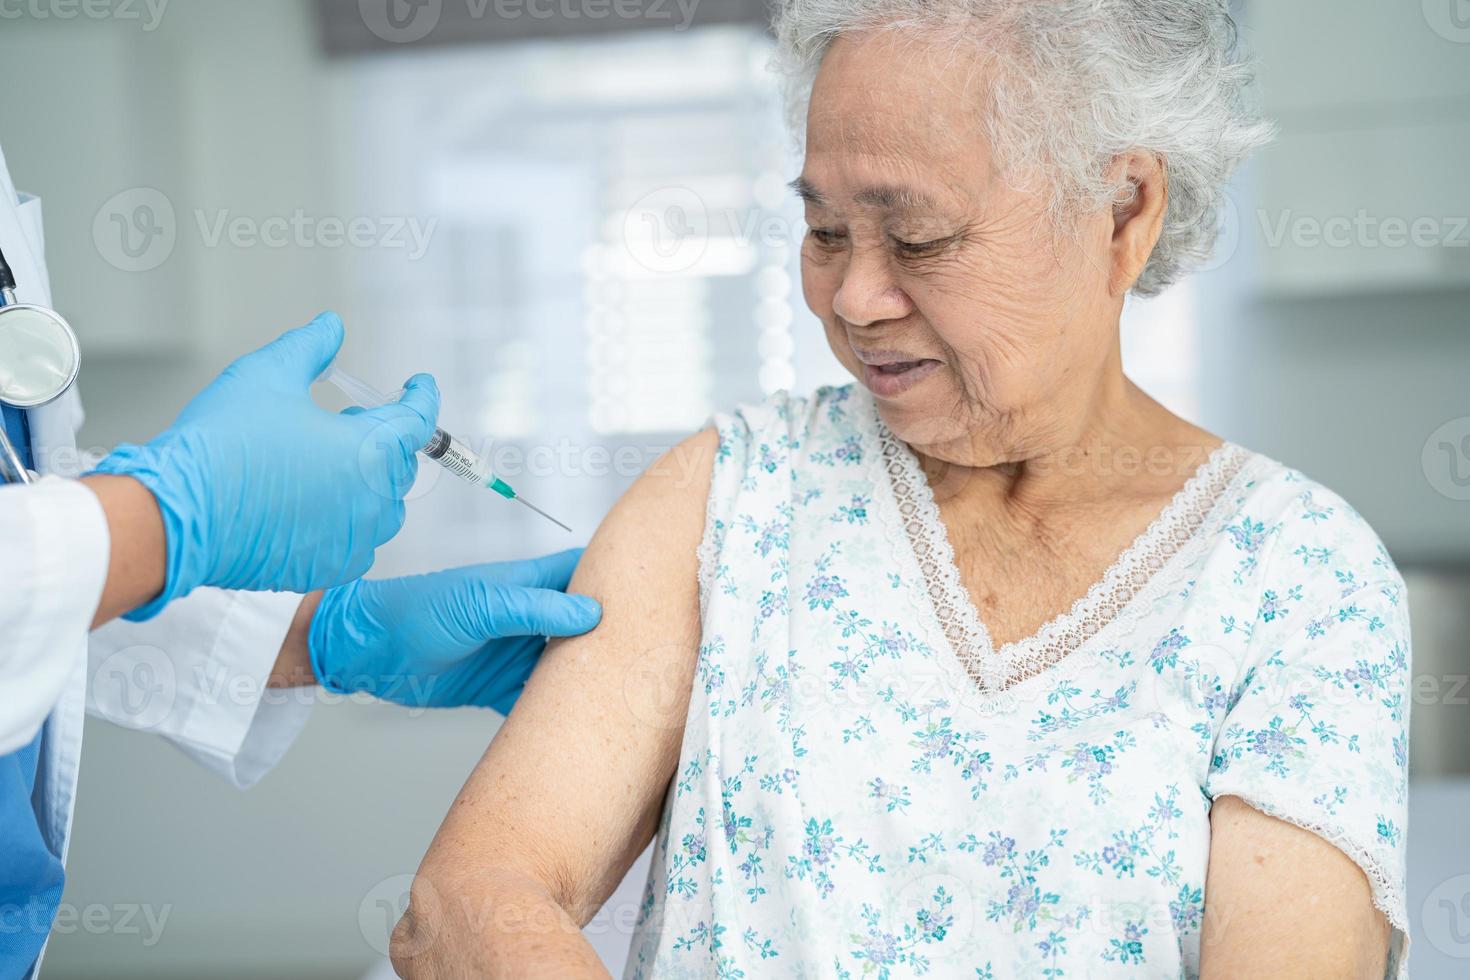 oudere aziatische senior vrouw met gezichtsmasker die covid-19 of coronavirusvaccin krijgt door een arts, maakt injectie. foto